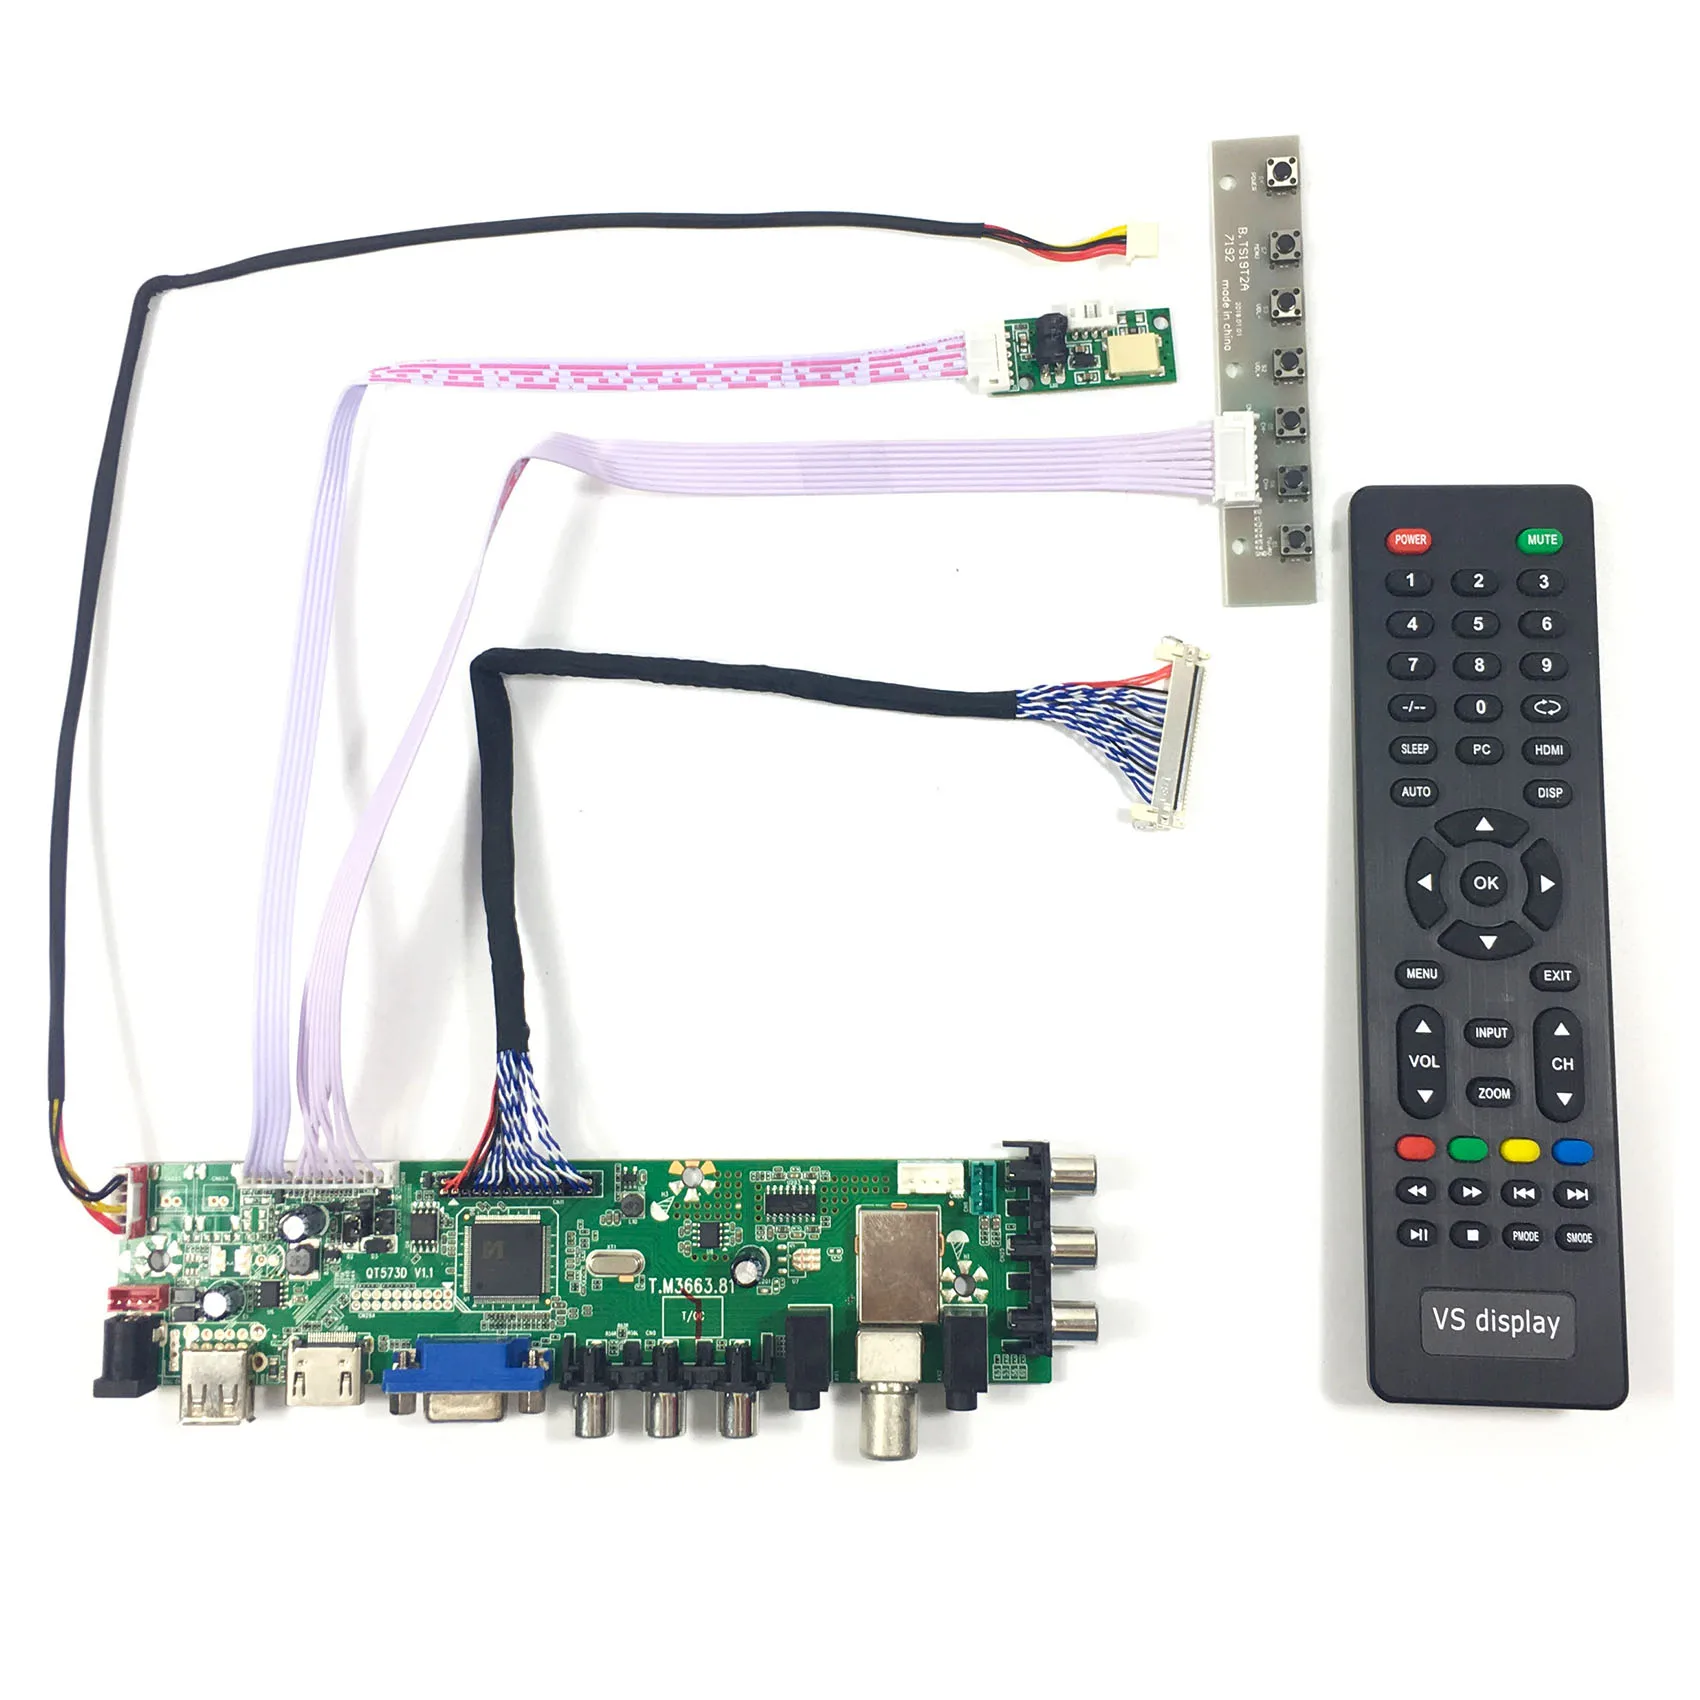 

VGA AV USB ATV DTV LCD Controller Board T.M3663.81 work for 17inch 1280x1024 G170EG01 V1